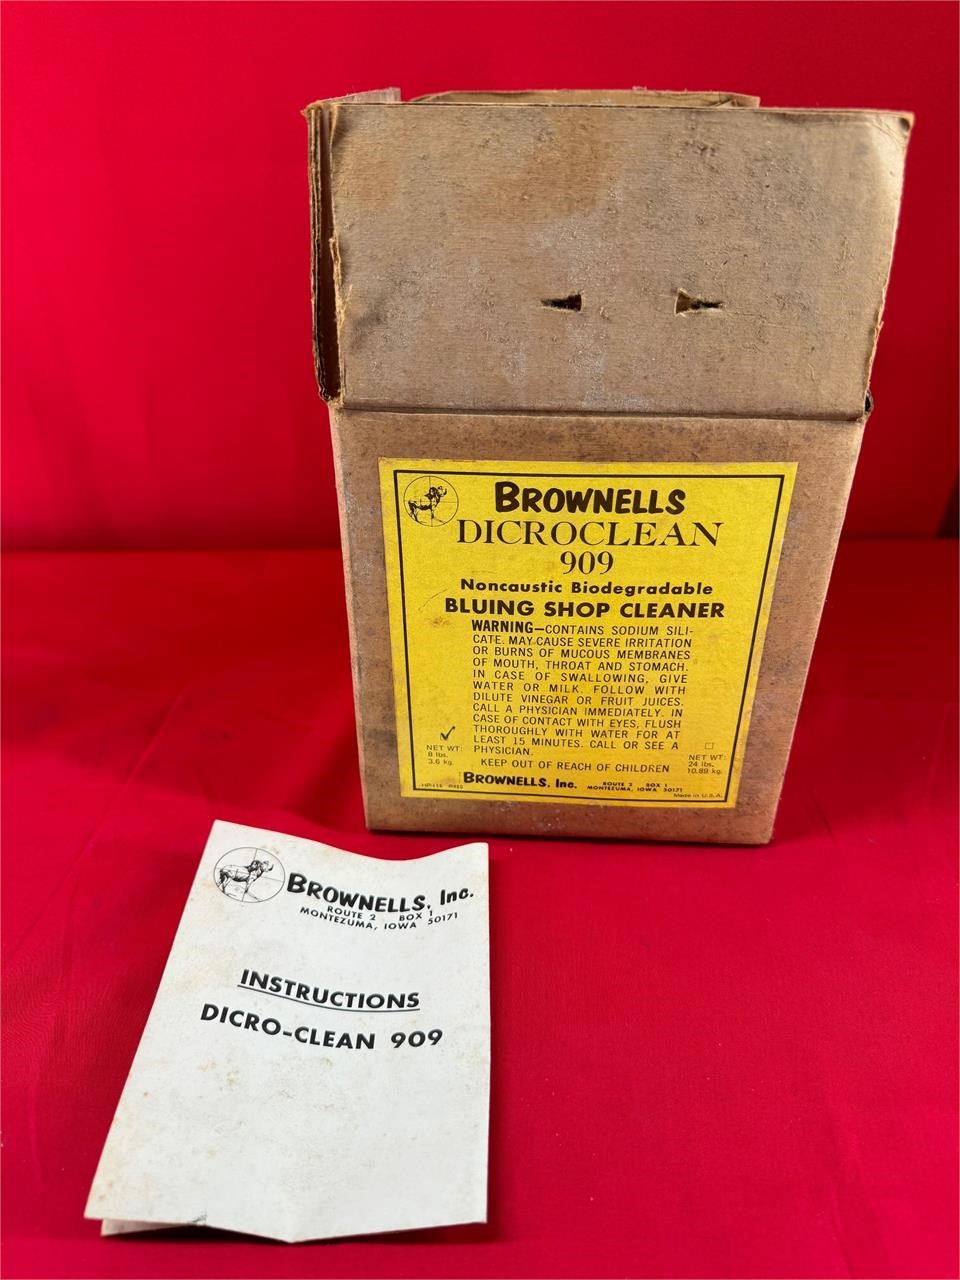 8lb box of Brownells Dicroclean 909 Tumbling Media